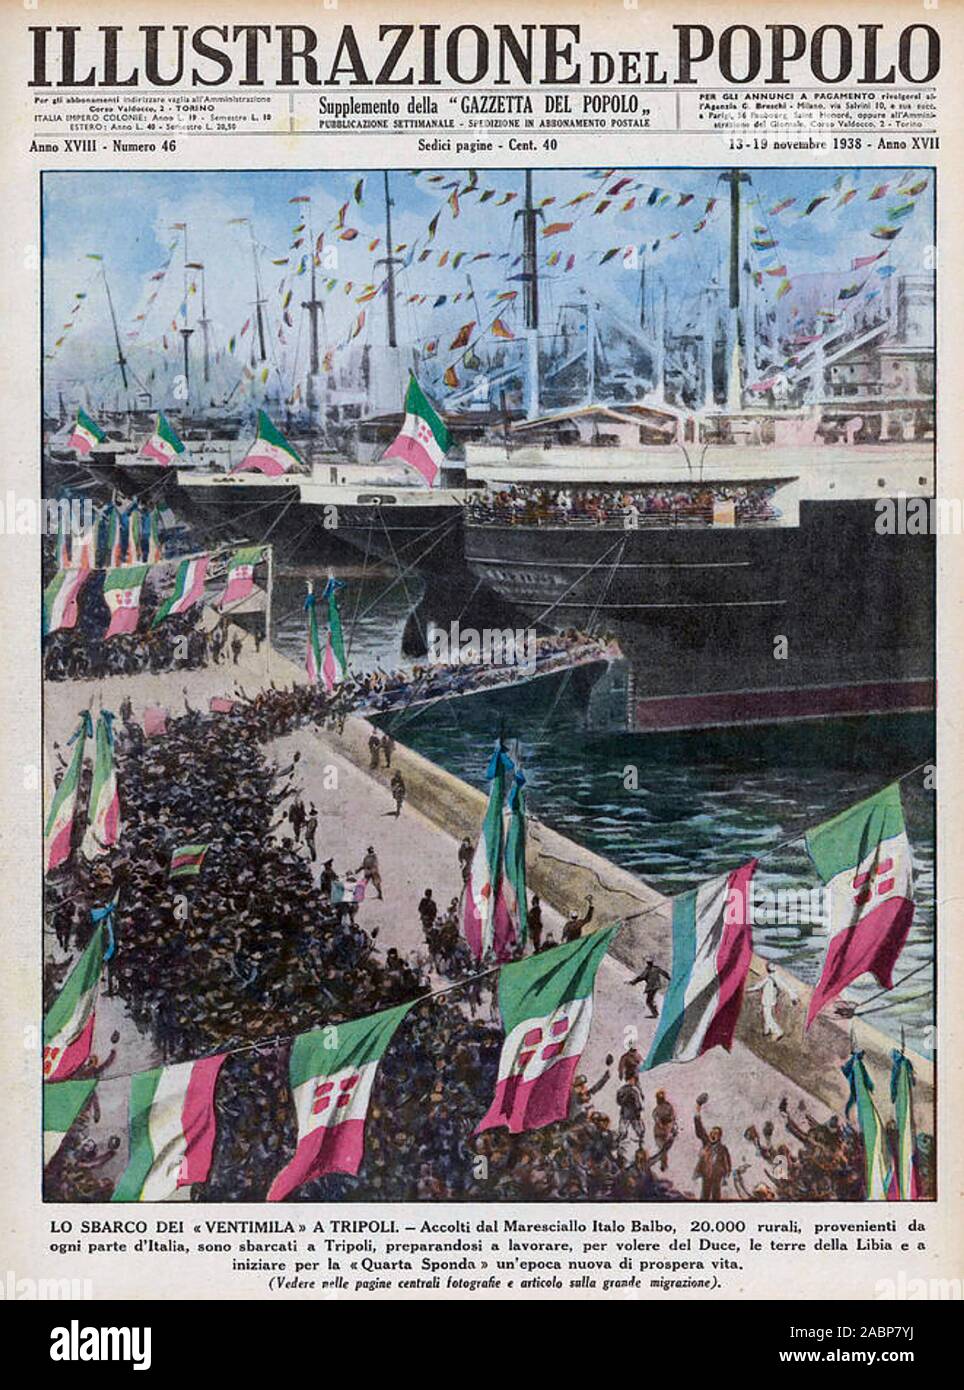 Couverture du magazine italien italien l'Ethiopie de 1938 montrant des  foules de paysans italiens navires embarquement à Tripoli en route vers l' Éthiopie après l'occupation italienne de l'année précédente Photo Stock -  Alamy